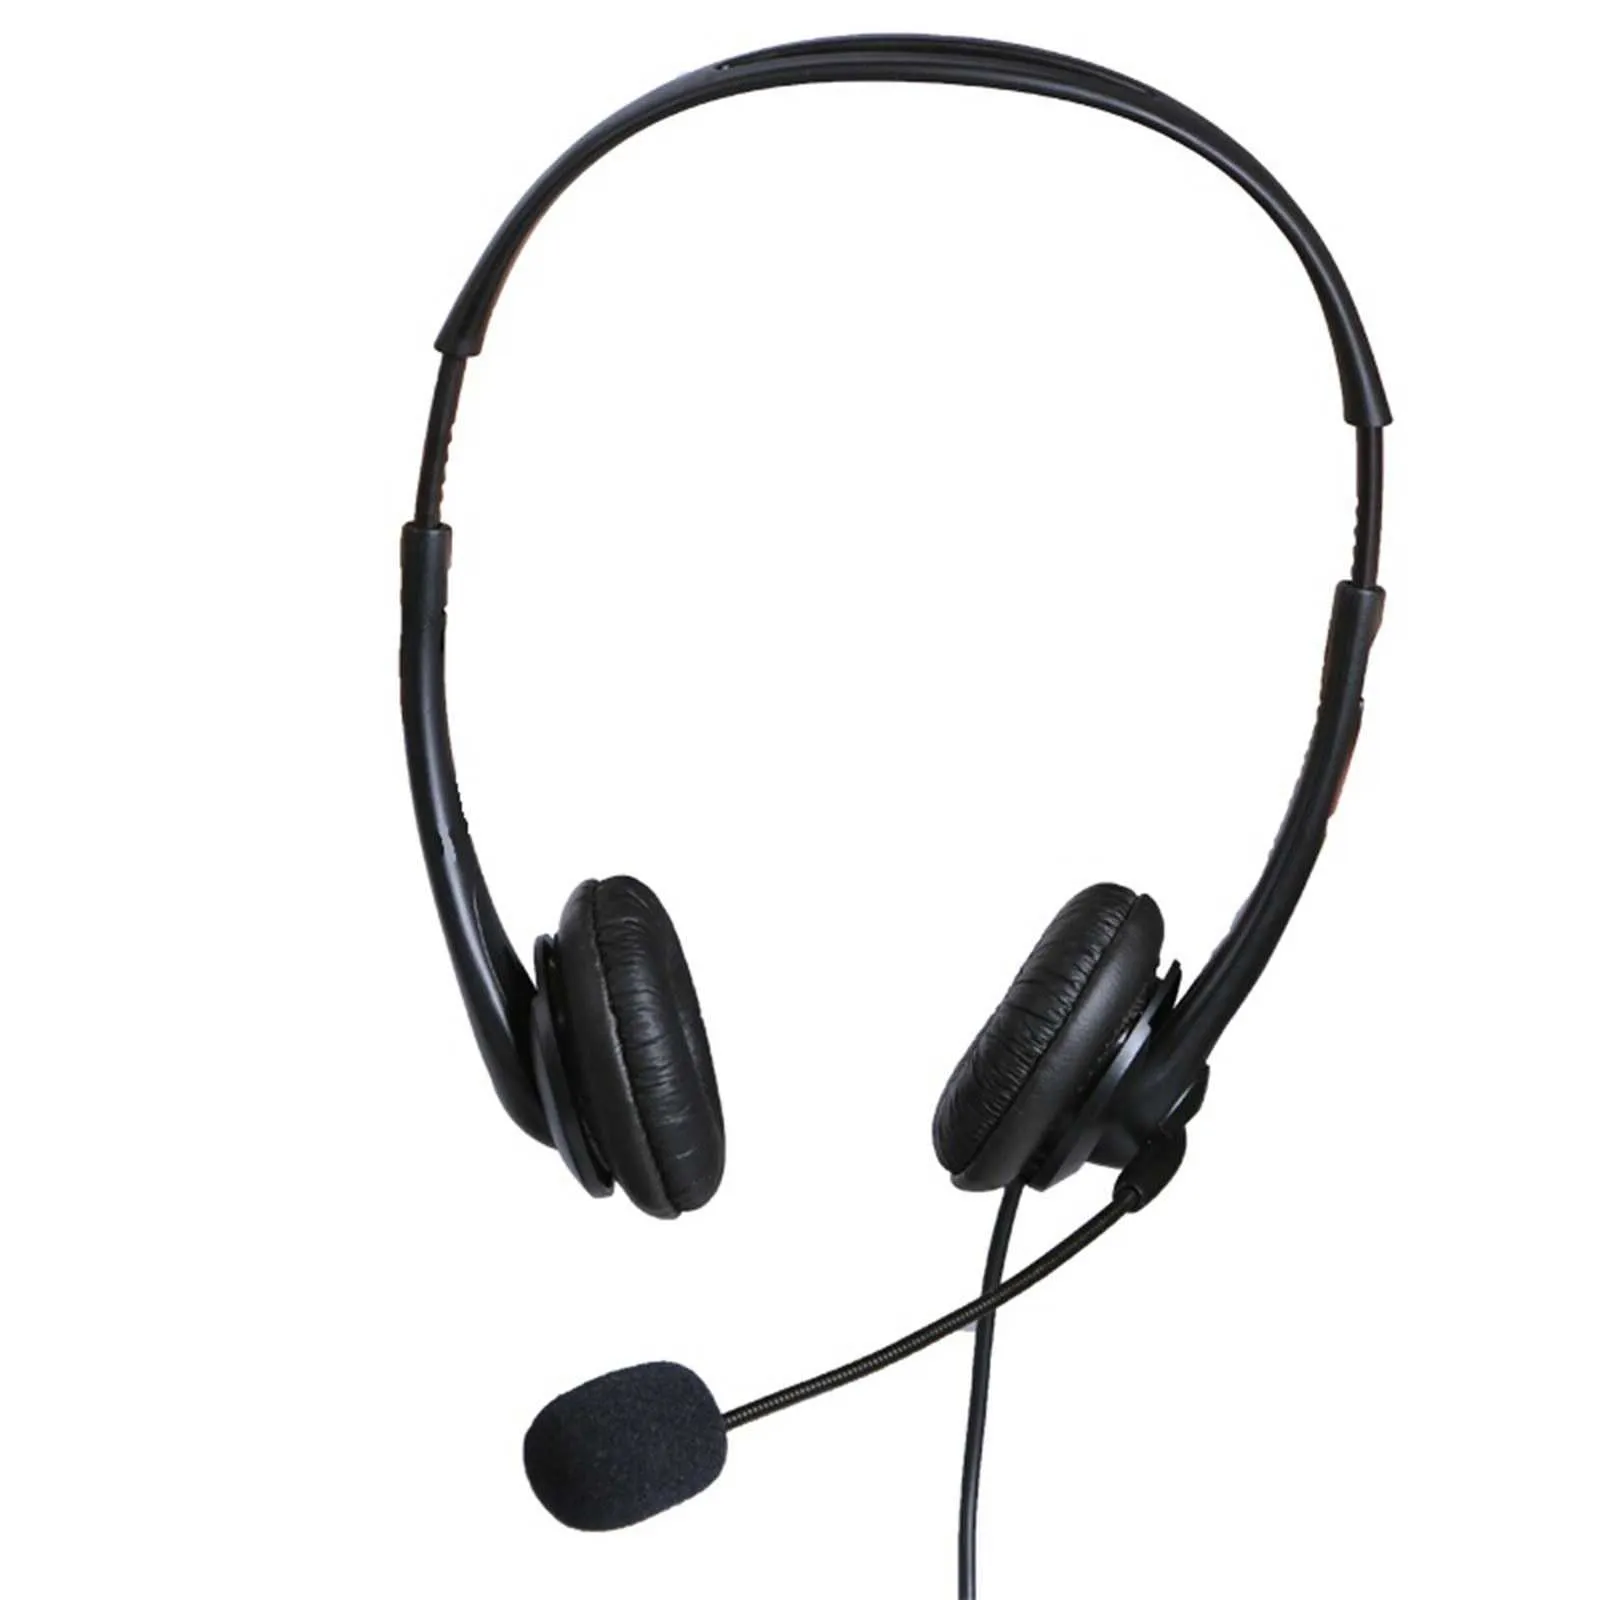 Zestaw słuchawkowy komputerowego 35 mm z mikrofonem do anulowania słuchawek do biurowej telefony telefonicznej2460270